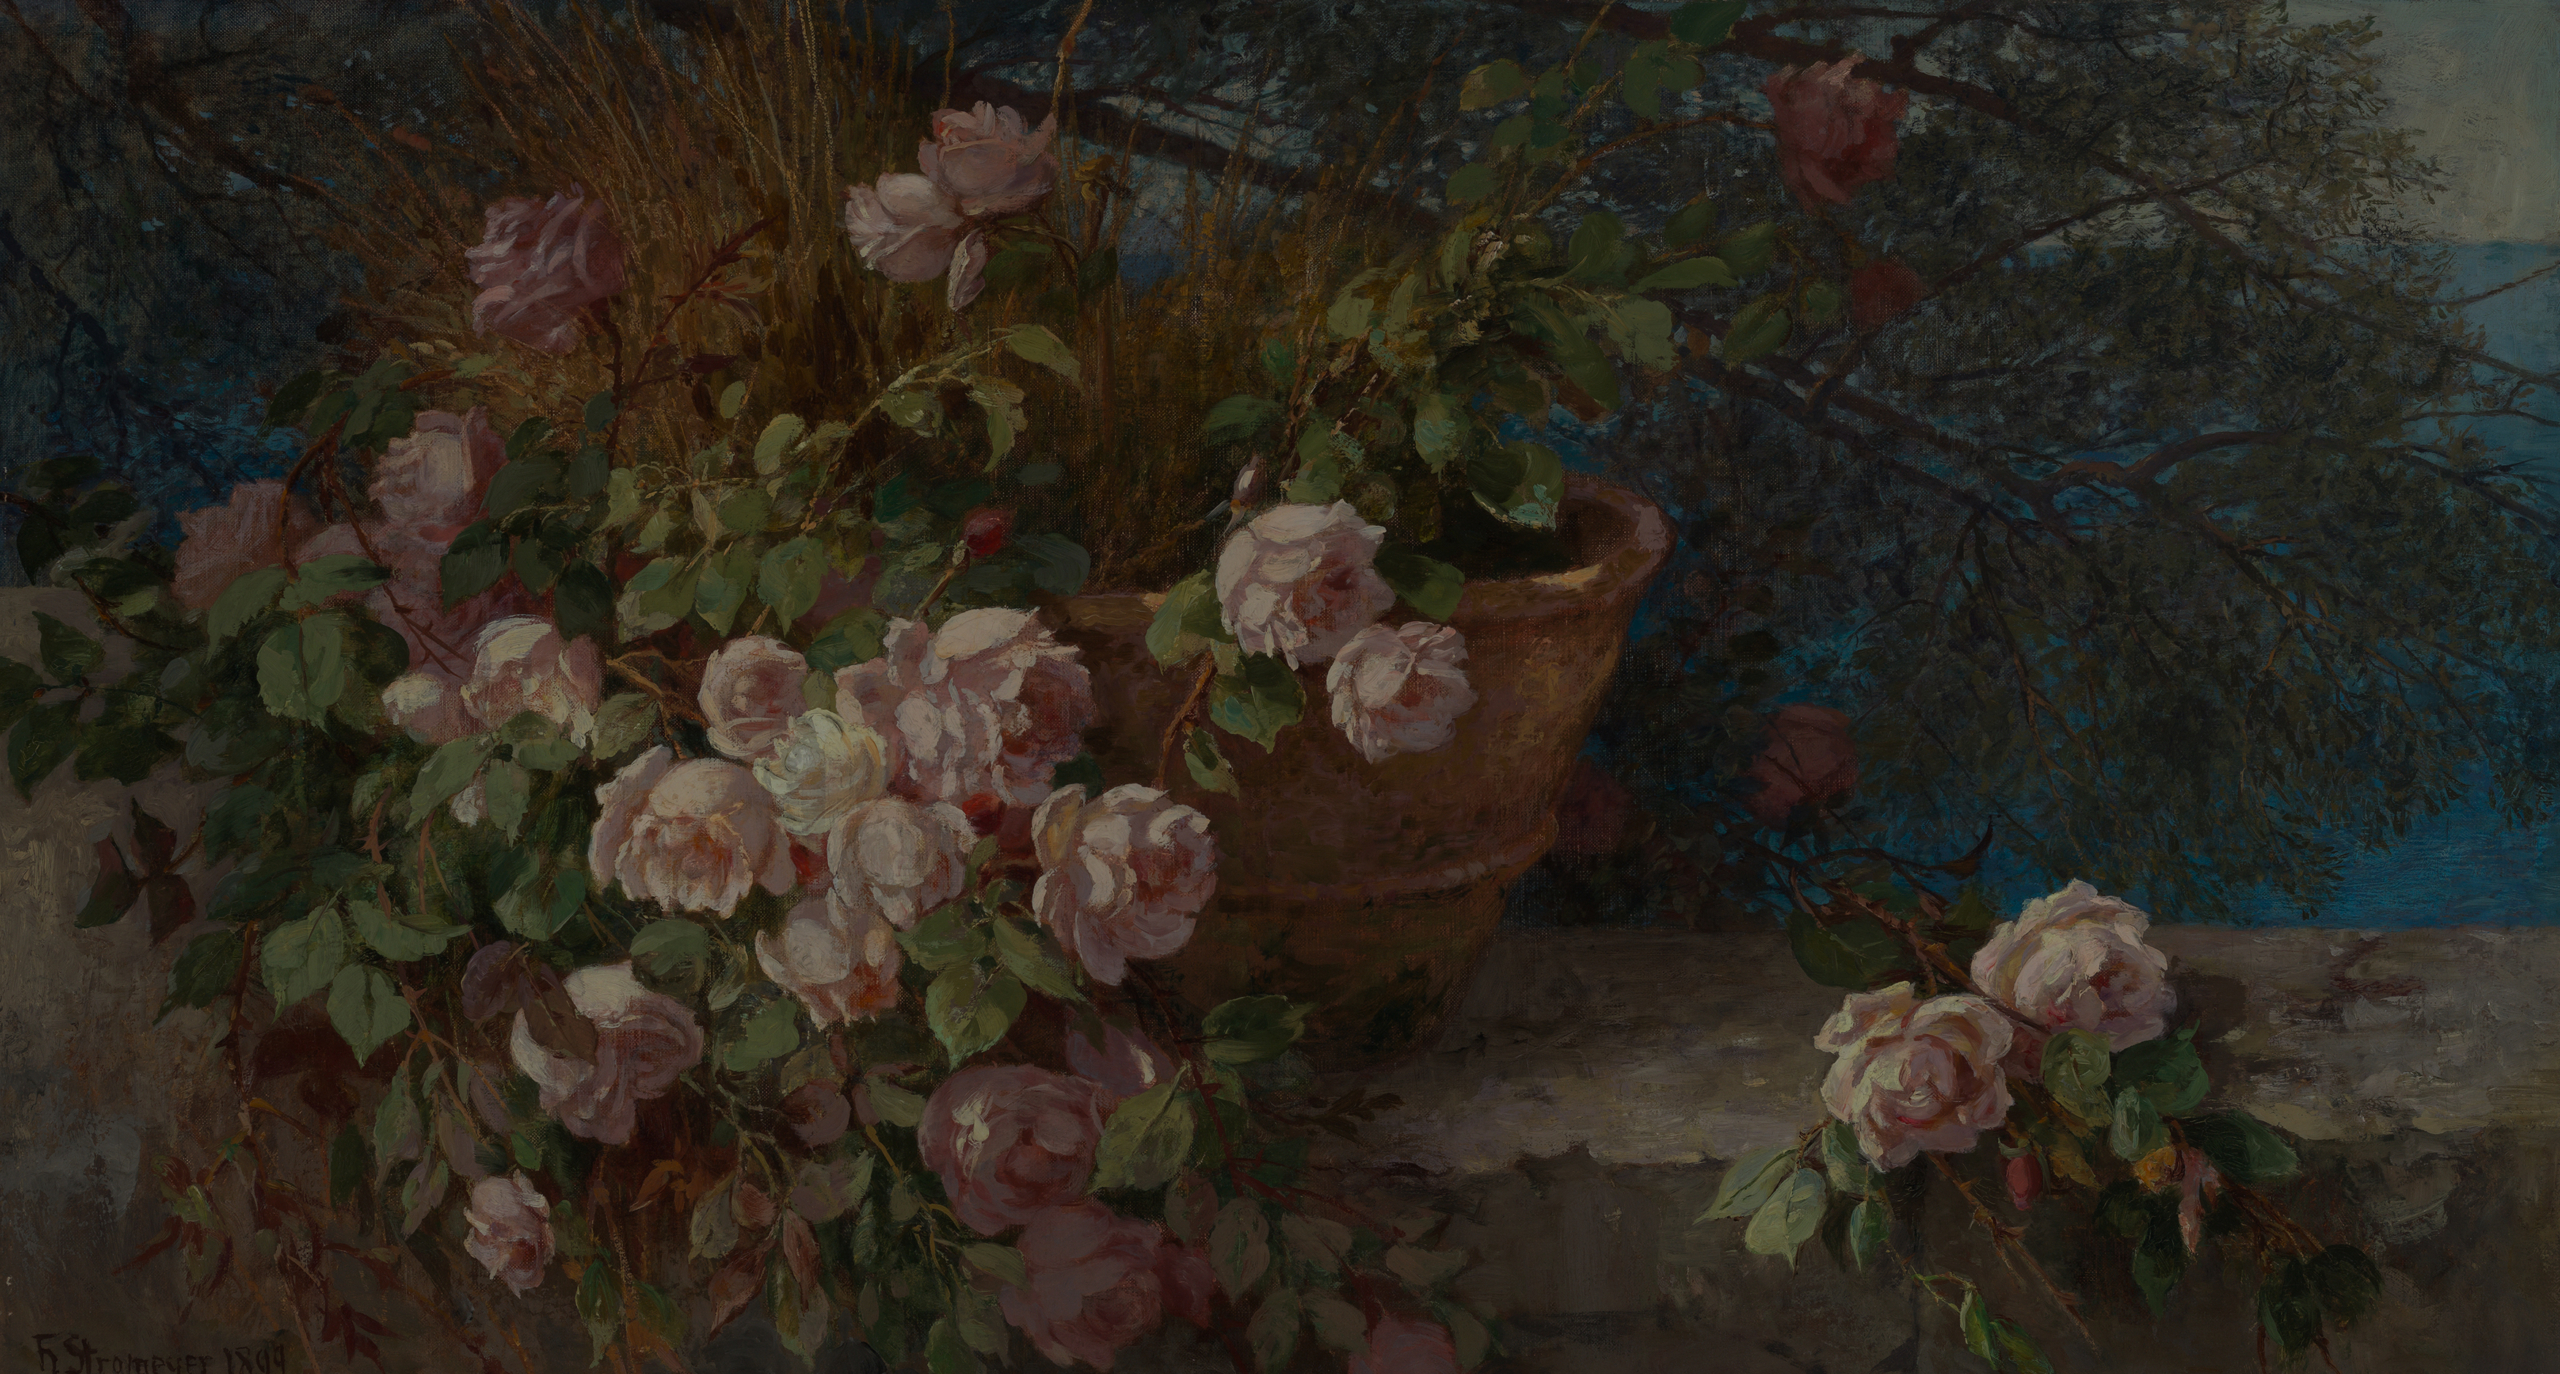 Das Bild zeigt einen großen Topf voller rosa Rosen.